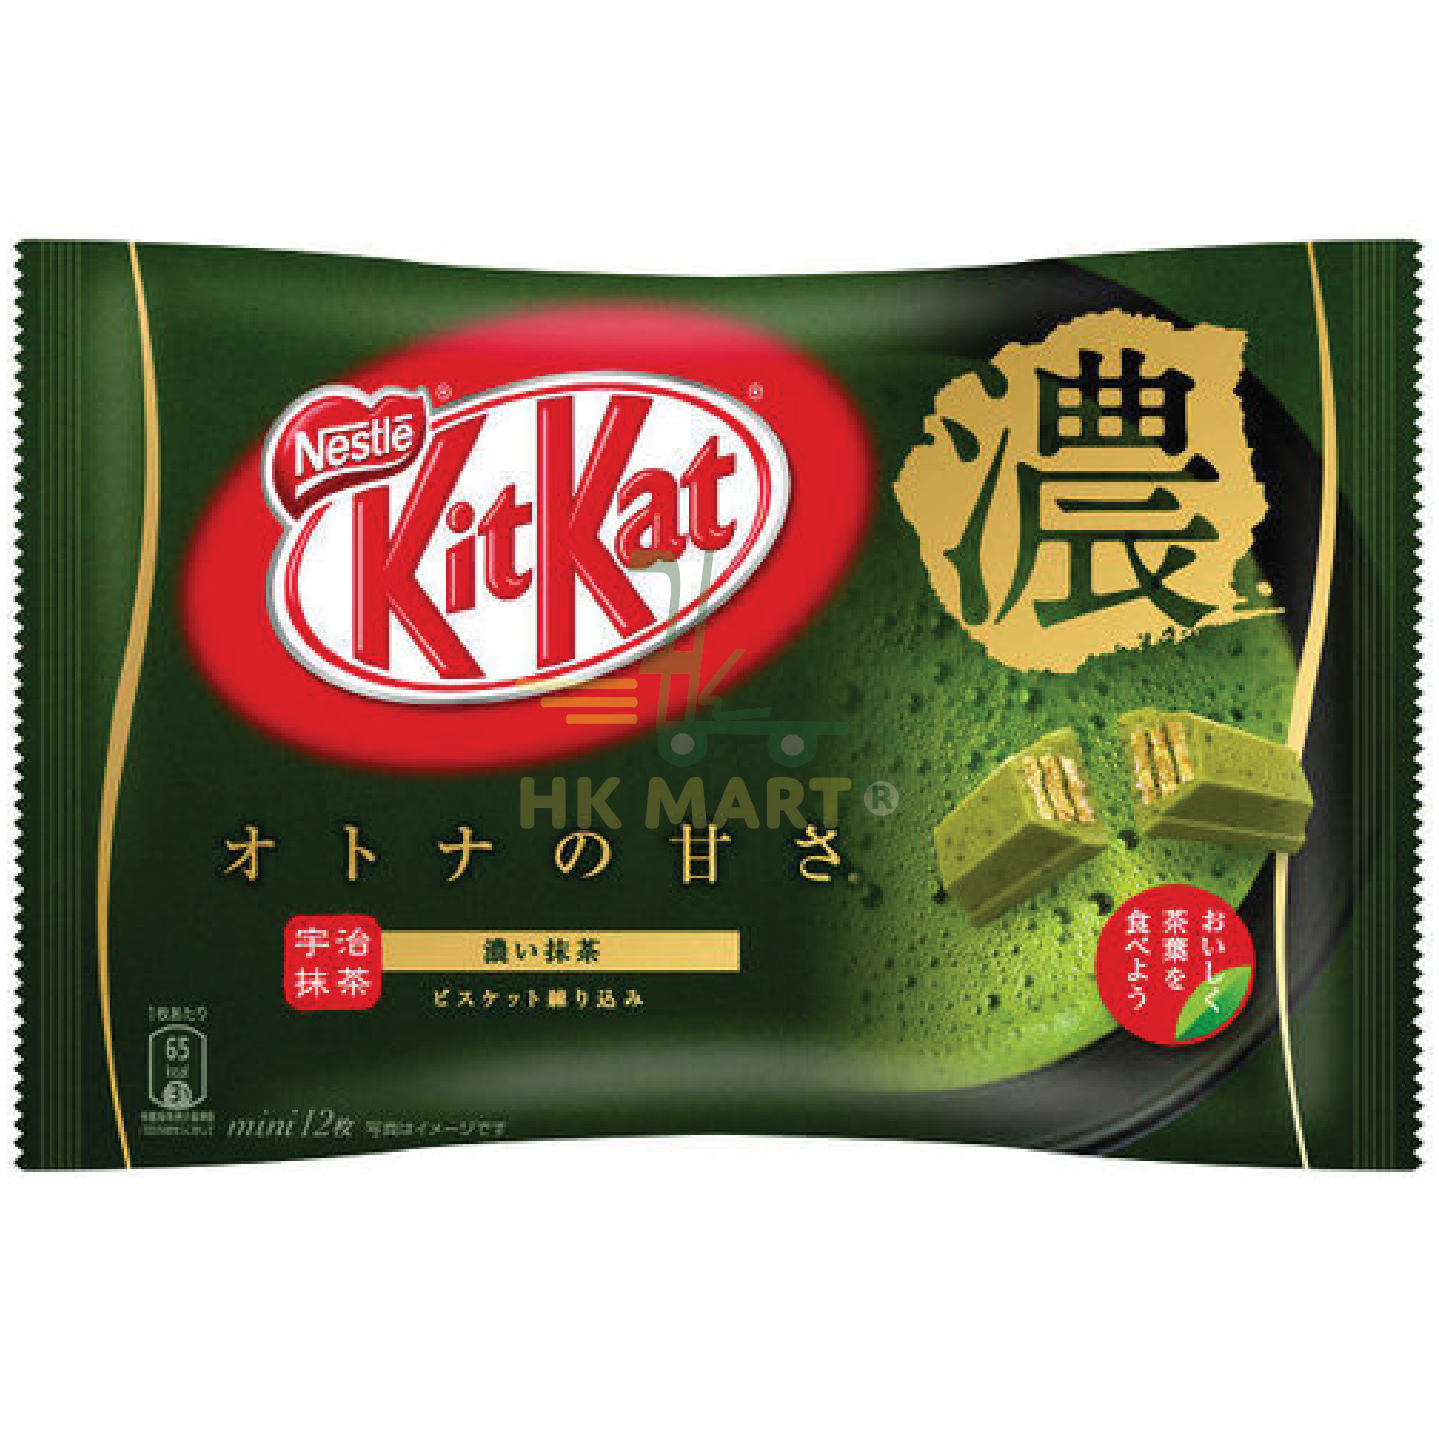 Nestle Kit Kat Matcha Green Tea Wafer Bars Bag 113G 日本雀巢 KIT KAT 濃綠茶朱古力 113G